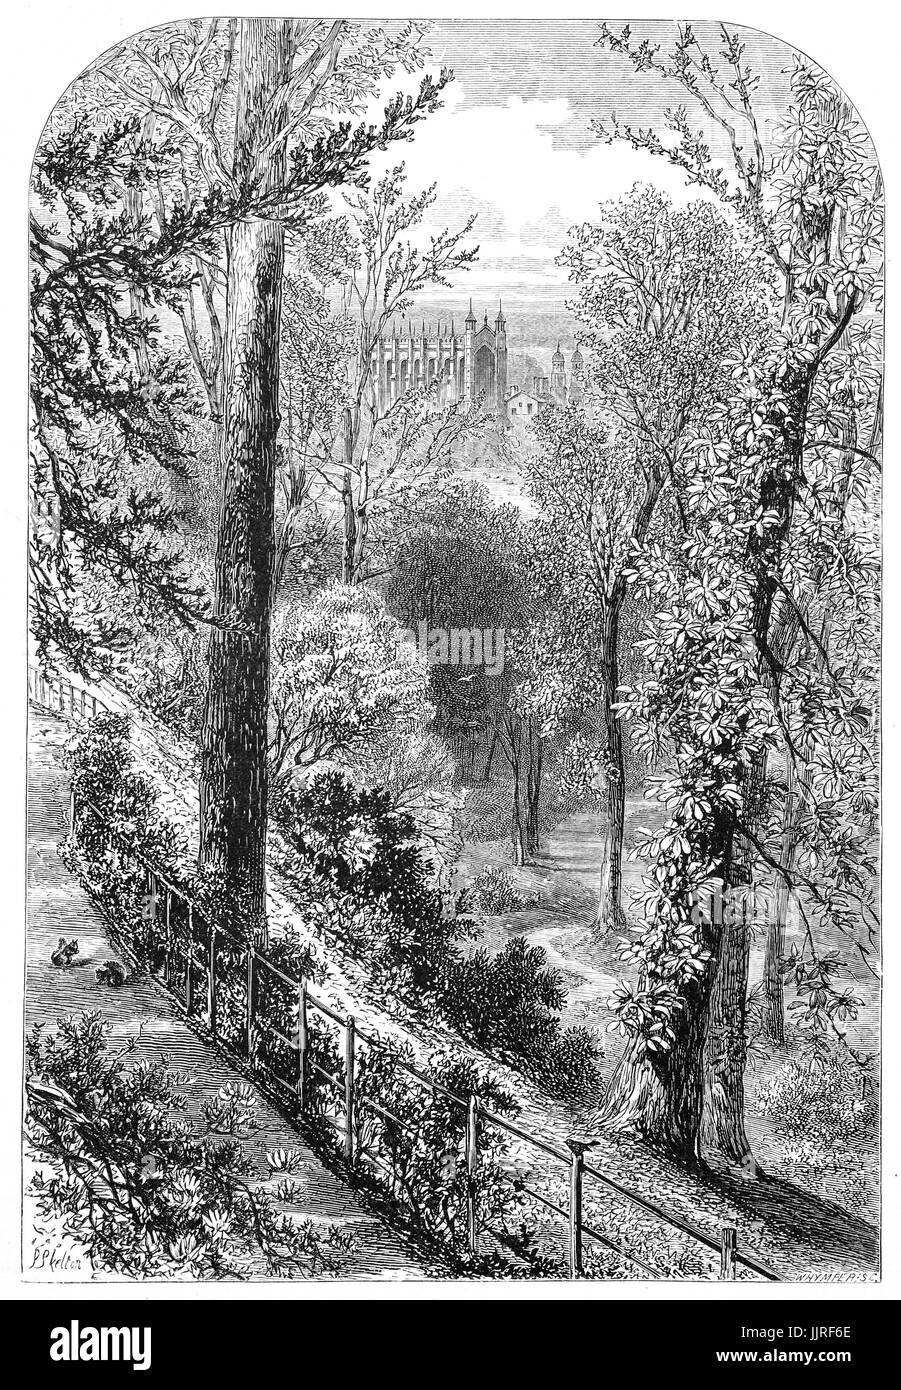 1870 : les pentes : le château de Windsor est placé sur le sommet d'une falaise de craie qui s'élève presque brusquement de la rive sud de la Tamise jusqu'à une hauteur de 100 ft et iis protégés par facile de défendre les pentes. Le Château de Windsor, Berkshire, Angleterre Banque D'Images